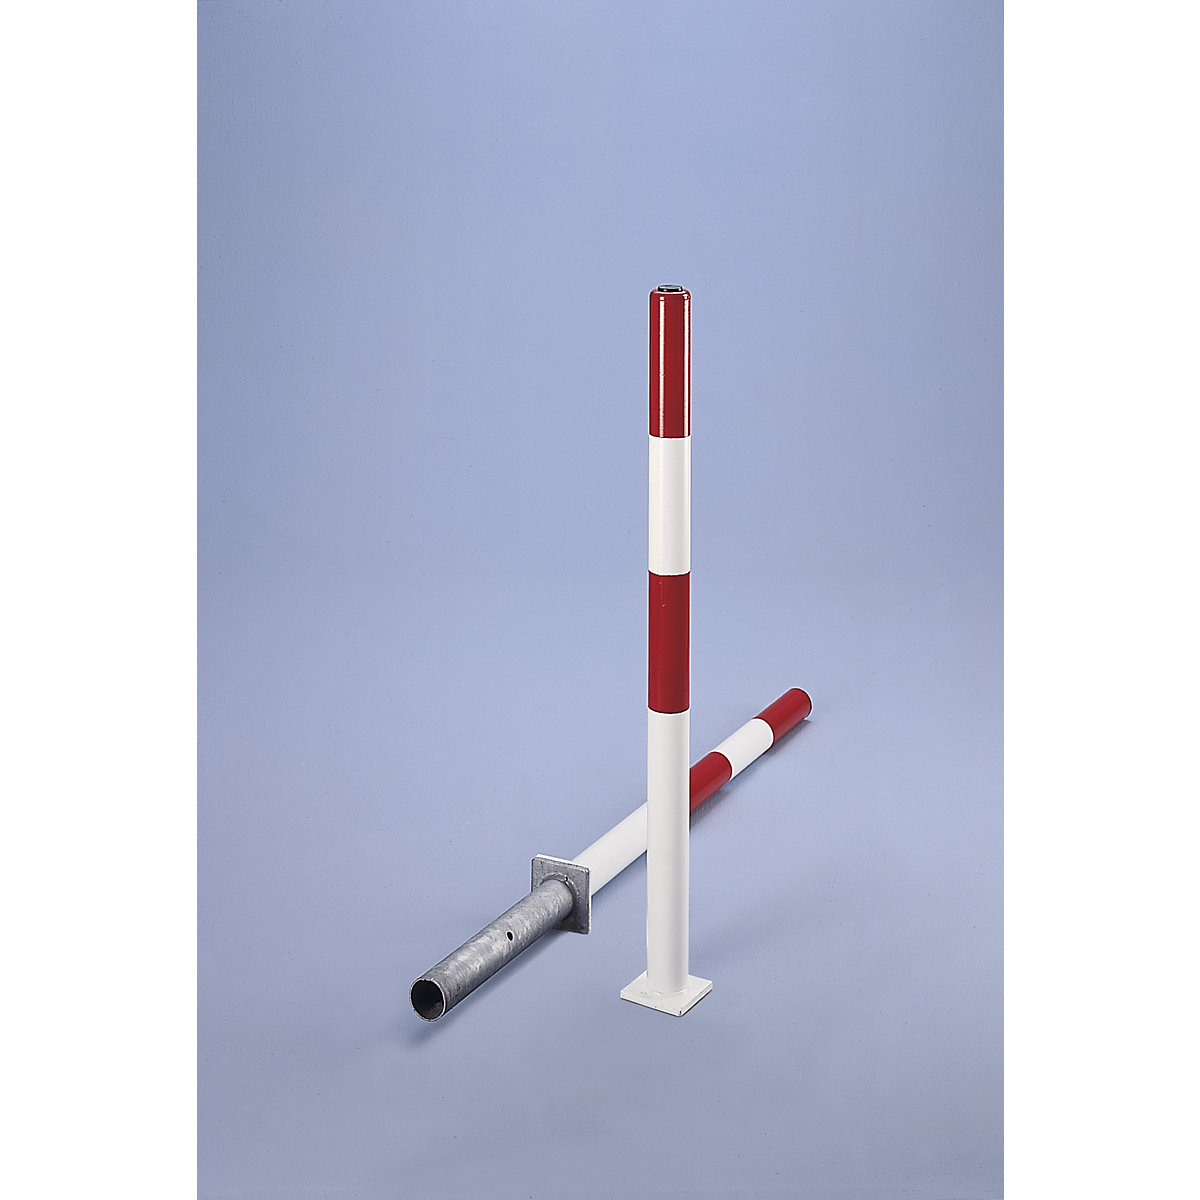 Paletto di sbarramento in tubo tondo d'acciaio, rosso / bianco, da annegare nel cemento, Ø 60 mm, serratura a cilindro, incl. 3 chiavi-2